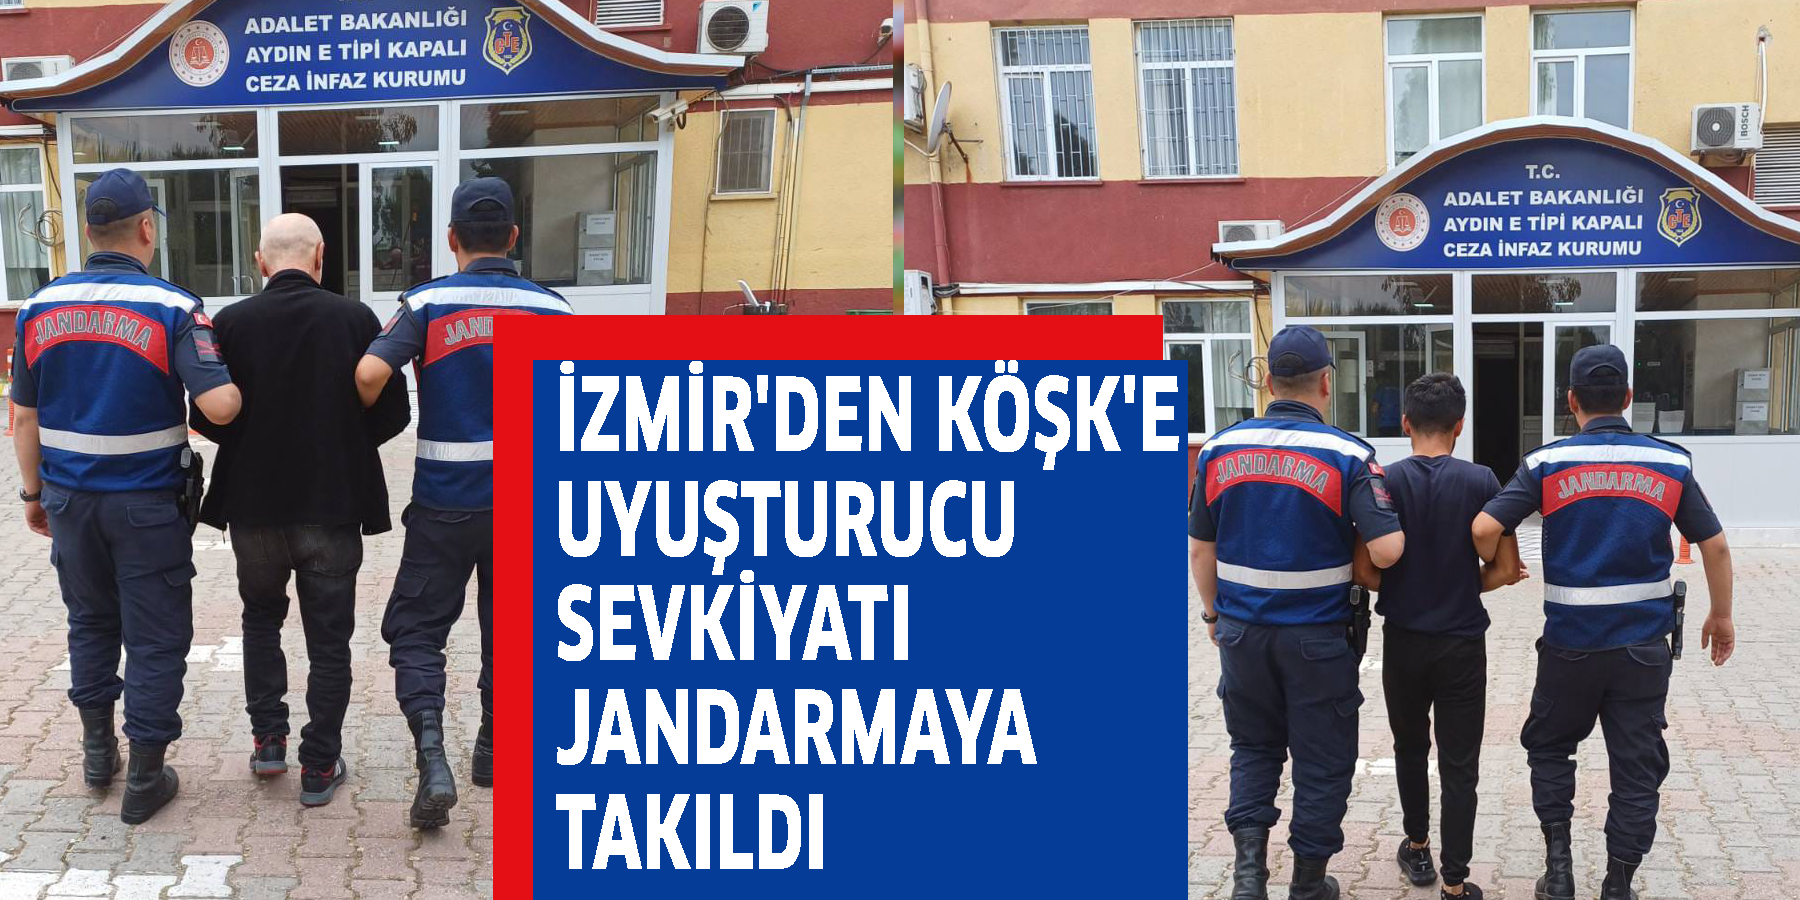 İzmir'den Köşk'e uyuşturucu sevkiyatı jandarmaya takıldı